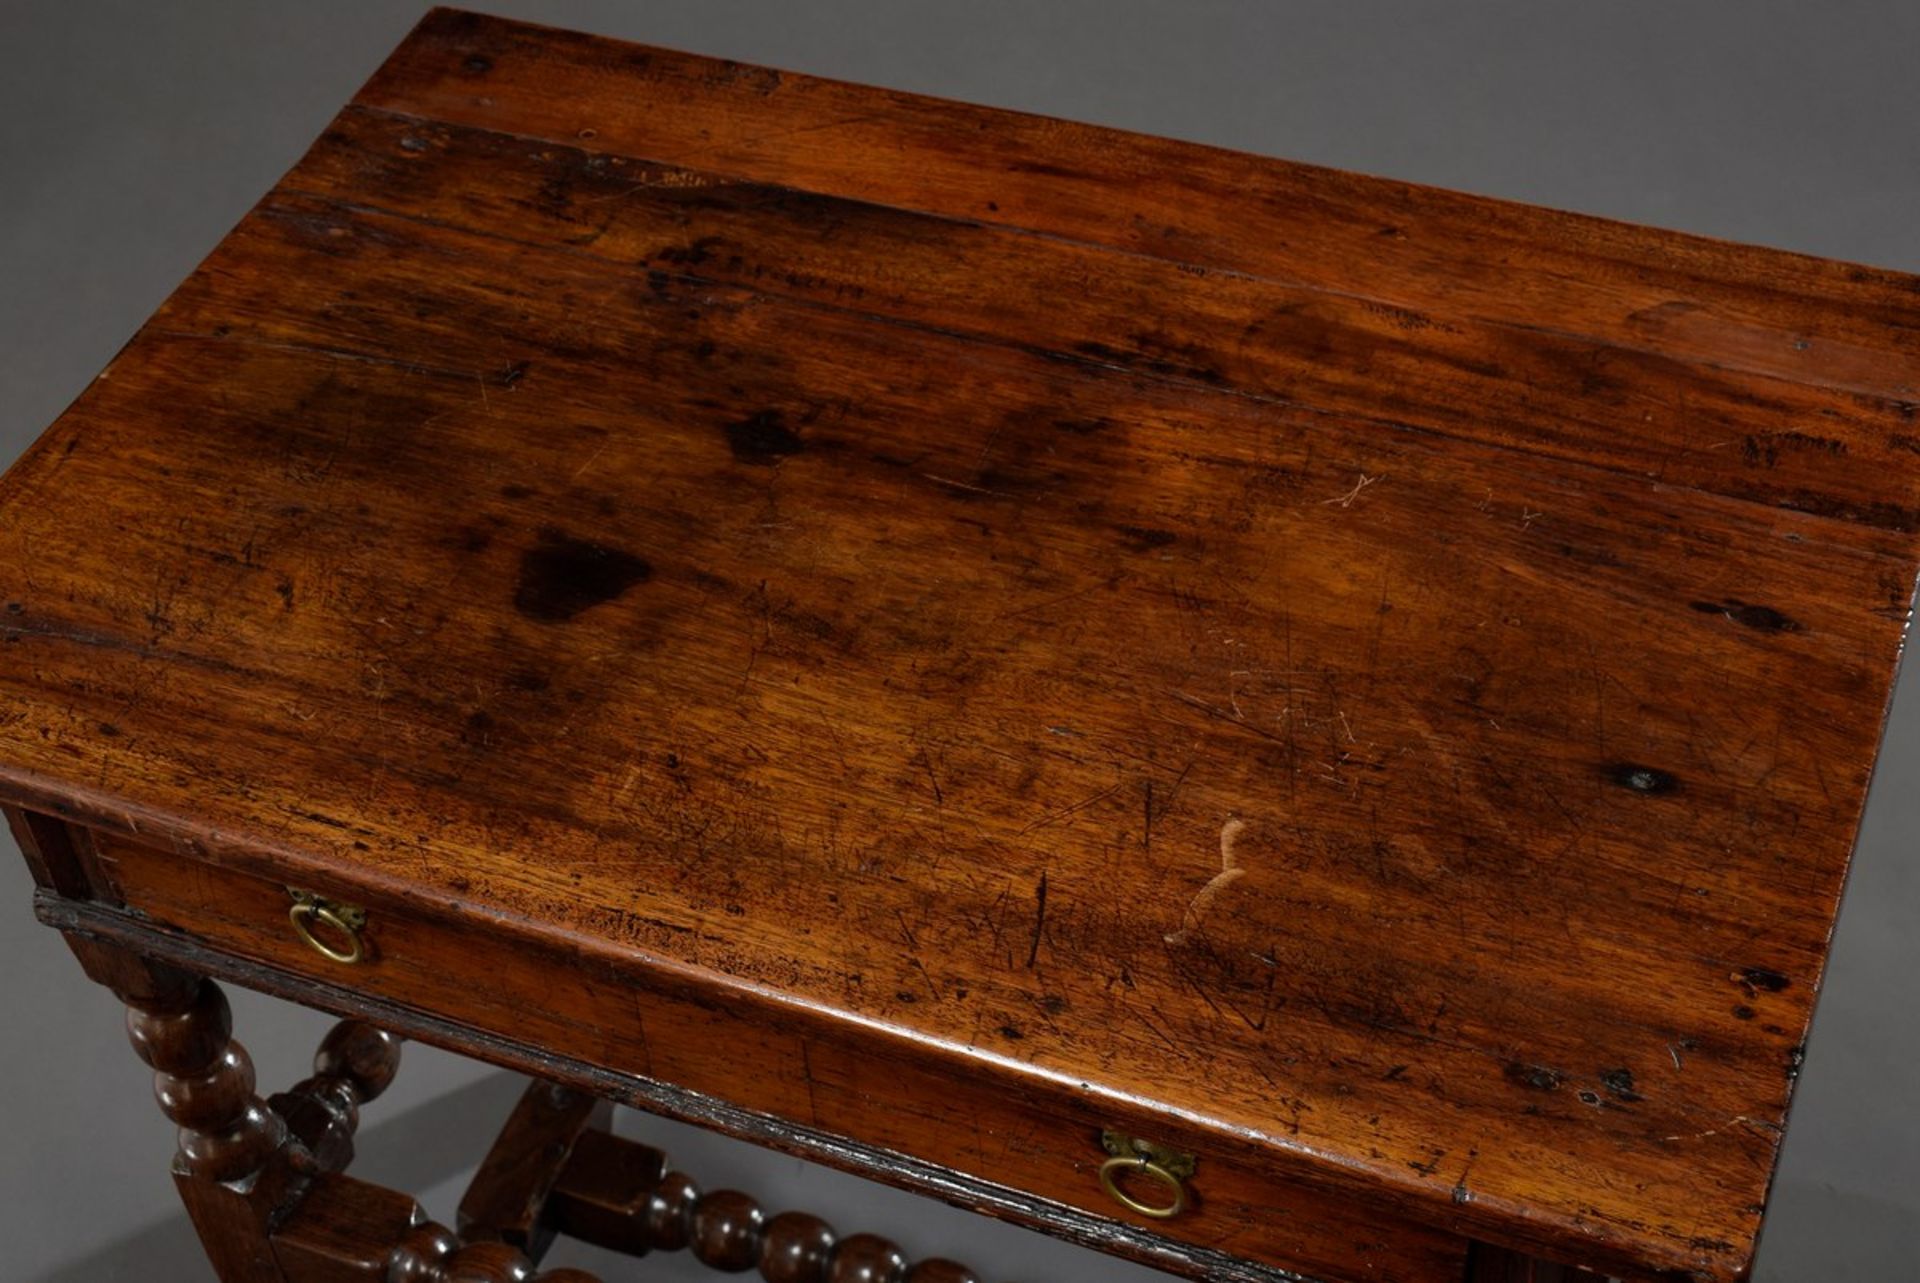 Tudor Tisch mit einem Schub auf gedrechselten Gestell, Eiche, England 17.Jh., 73x73,5x50cm, - Bild 2 aus 8